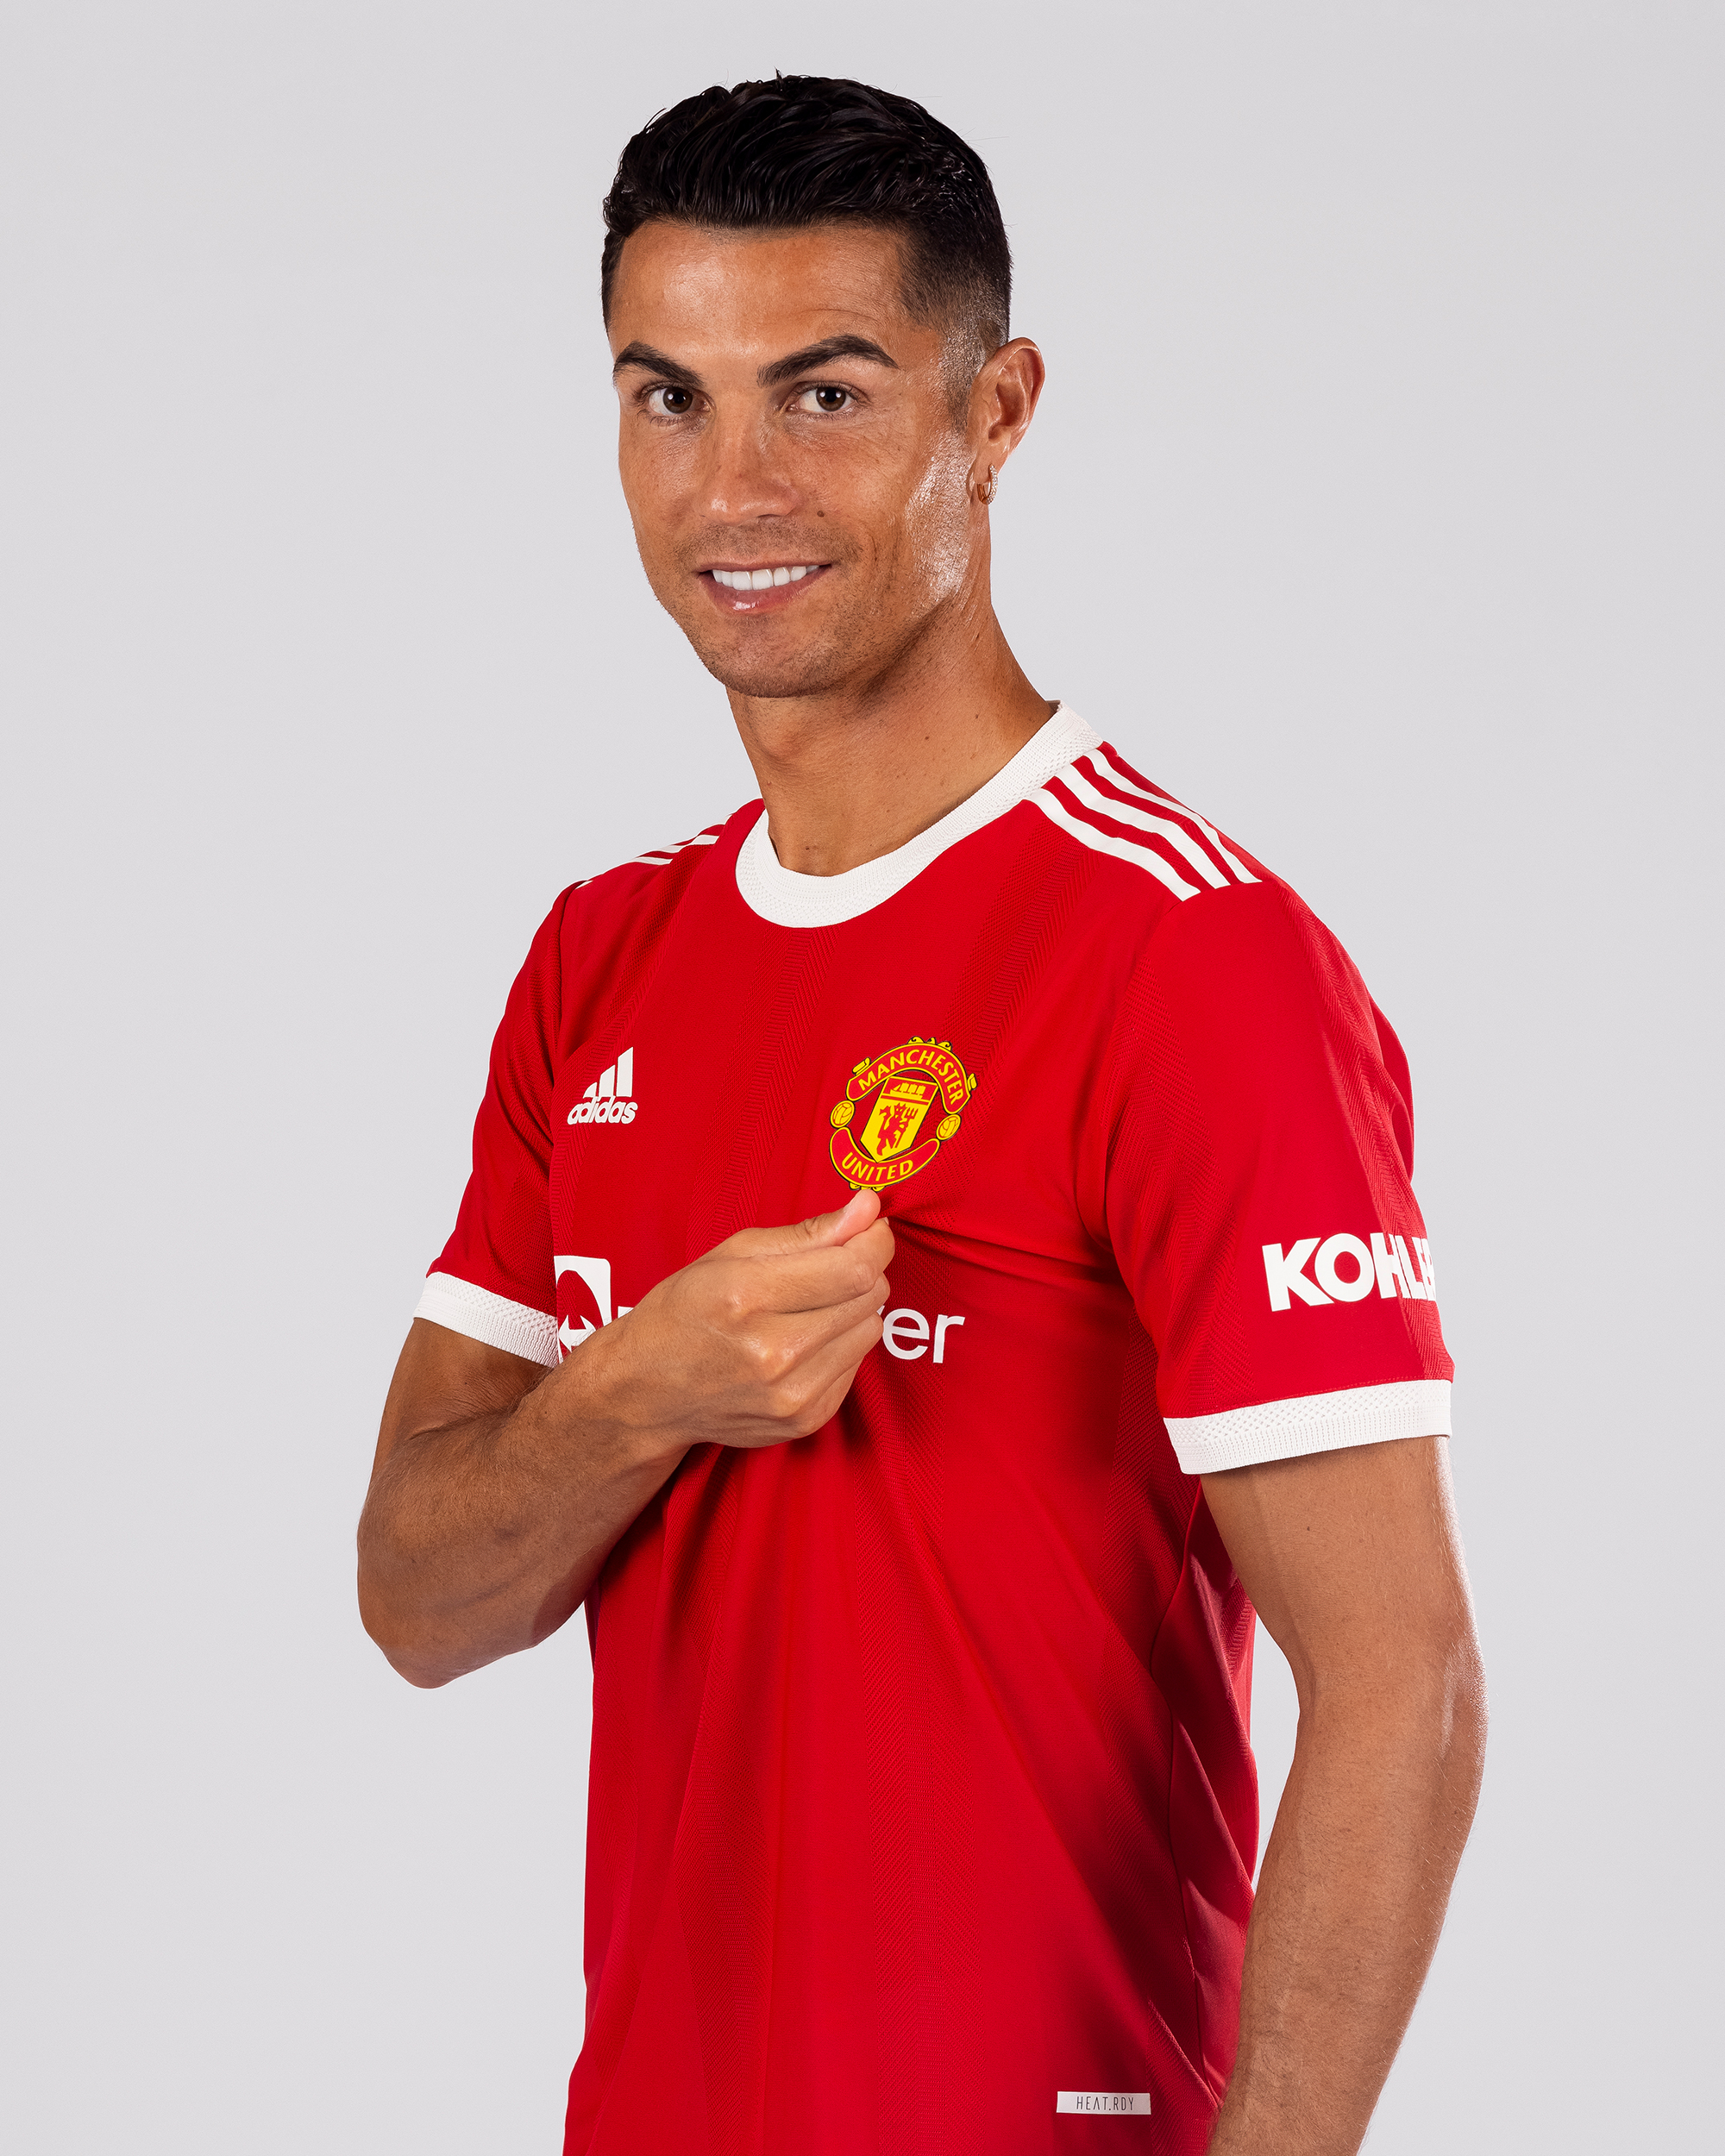 Photoshop: Bạn không phải lo lắng về việc chỉnh sửa ảnh nữa. Bạn sẽ không còn cần phải chỉnh sửa ảnh của mình để chèn Ronaldo vào ảnh của Manchester United nữa. Hãy xem hình ảnh này để có được bức ảnh tuyệt vời nhất mà không cần phải chỉnh sửa.